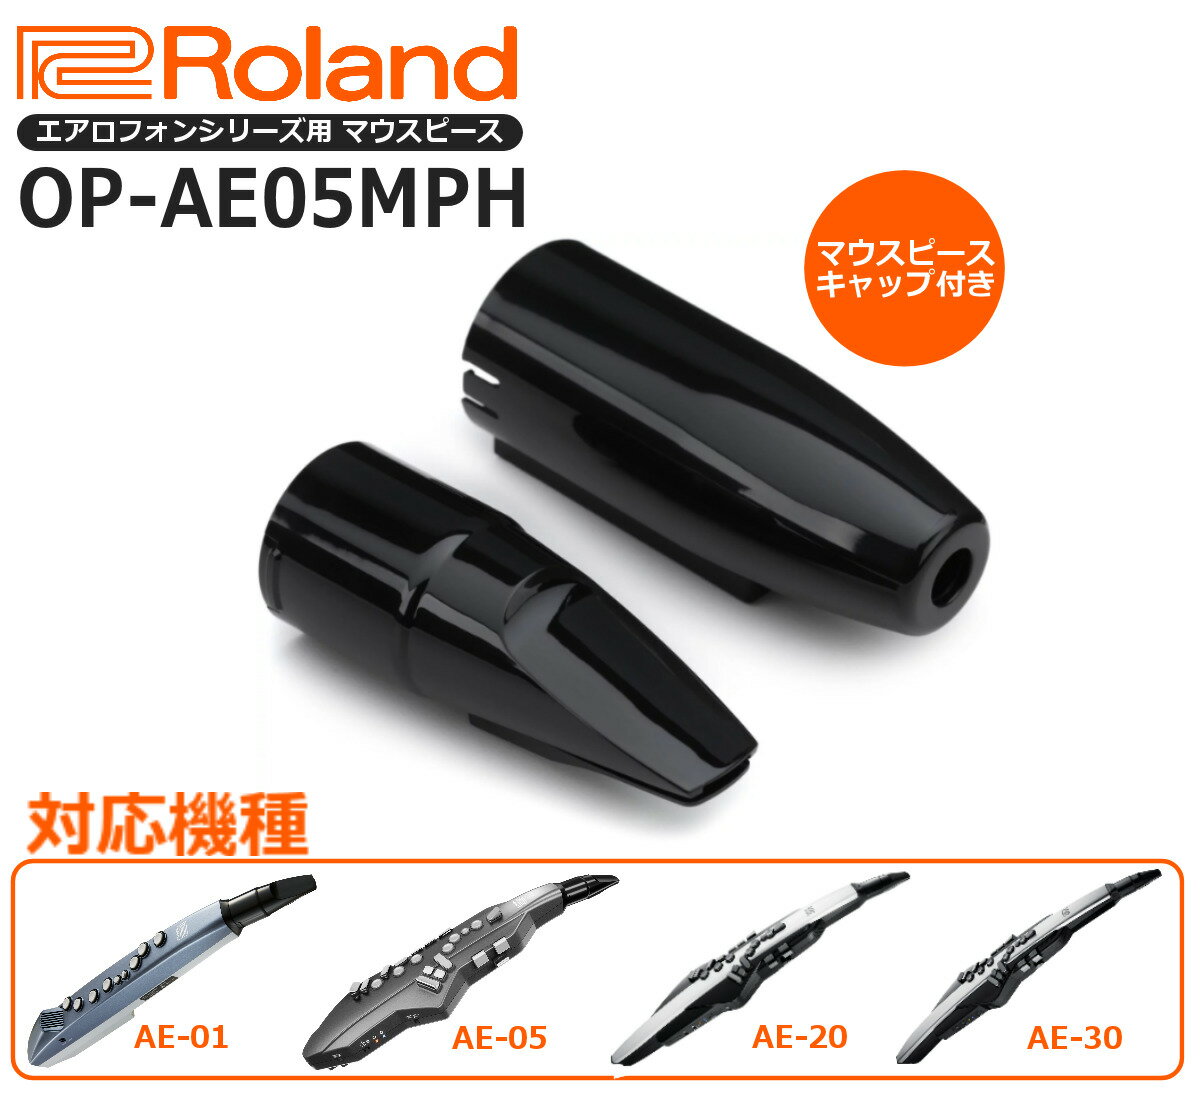 【あす楽対応】【マウスピースカバー付き】Roland ローランド Aerophone エアロフォン 交換用マウスピース Replaceme…